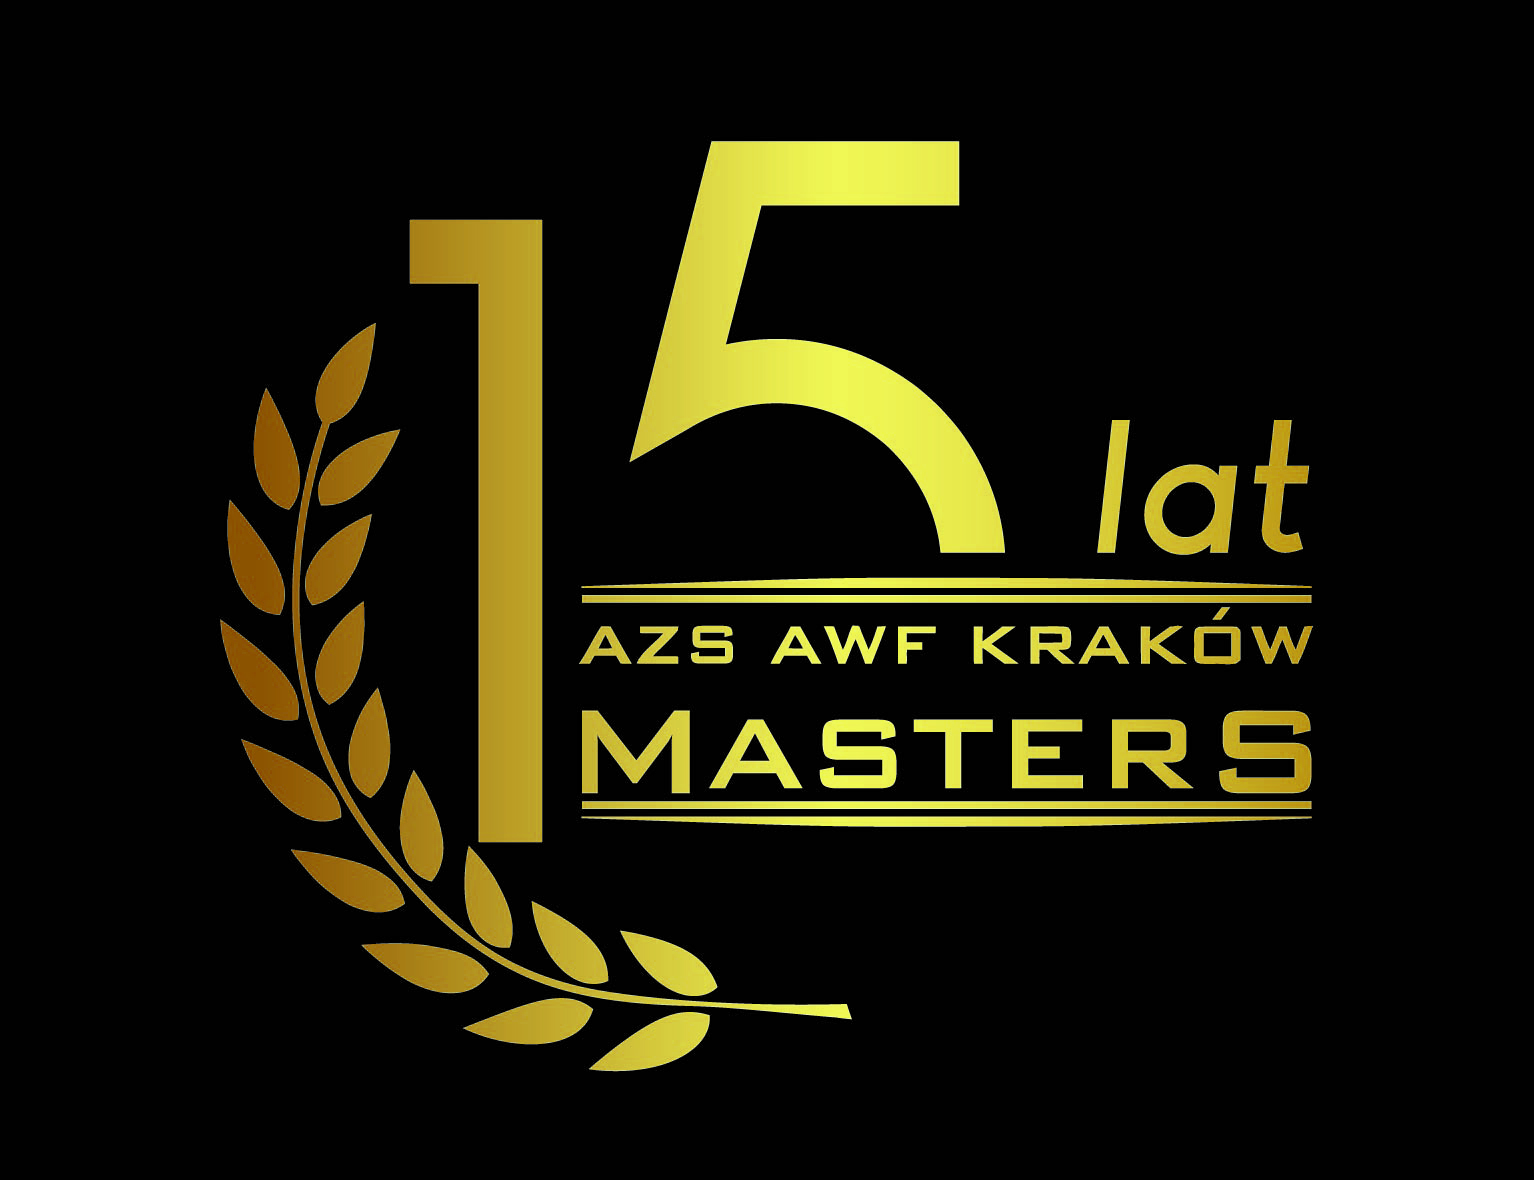 MASTERS-15-LAT-zloty.jpg